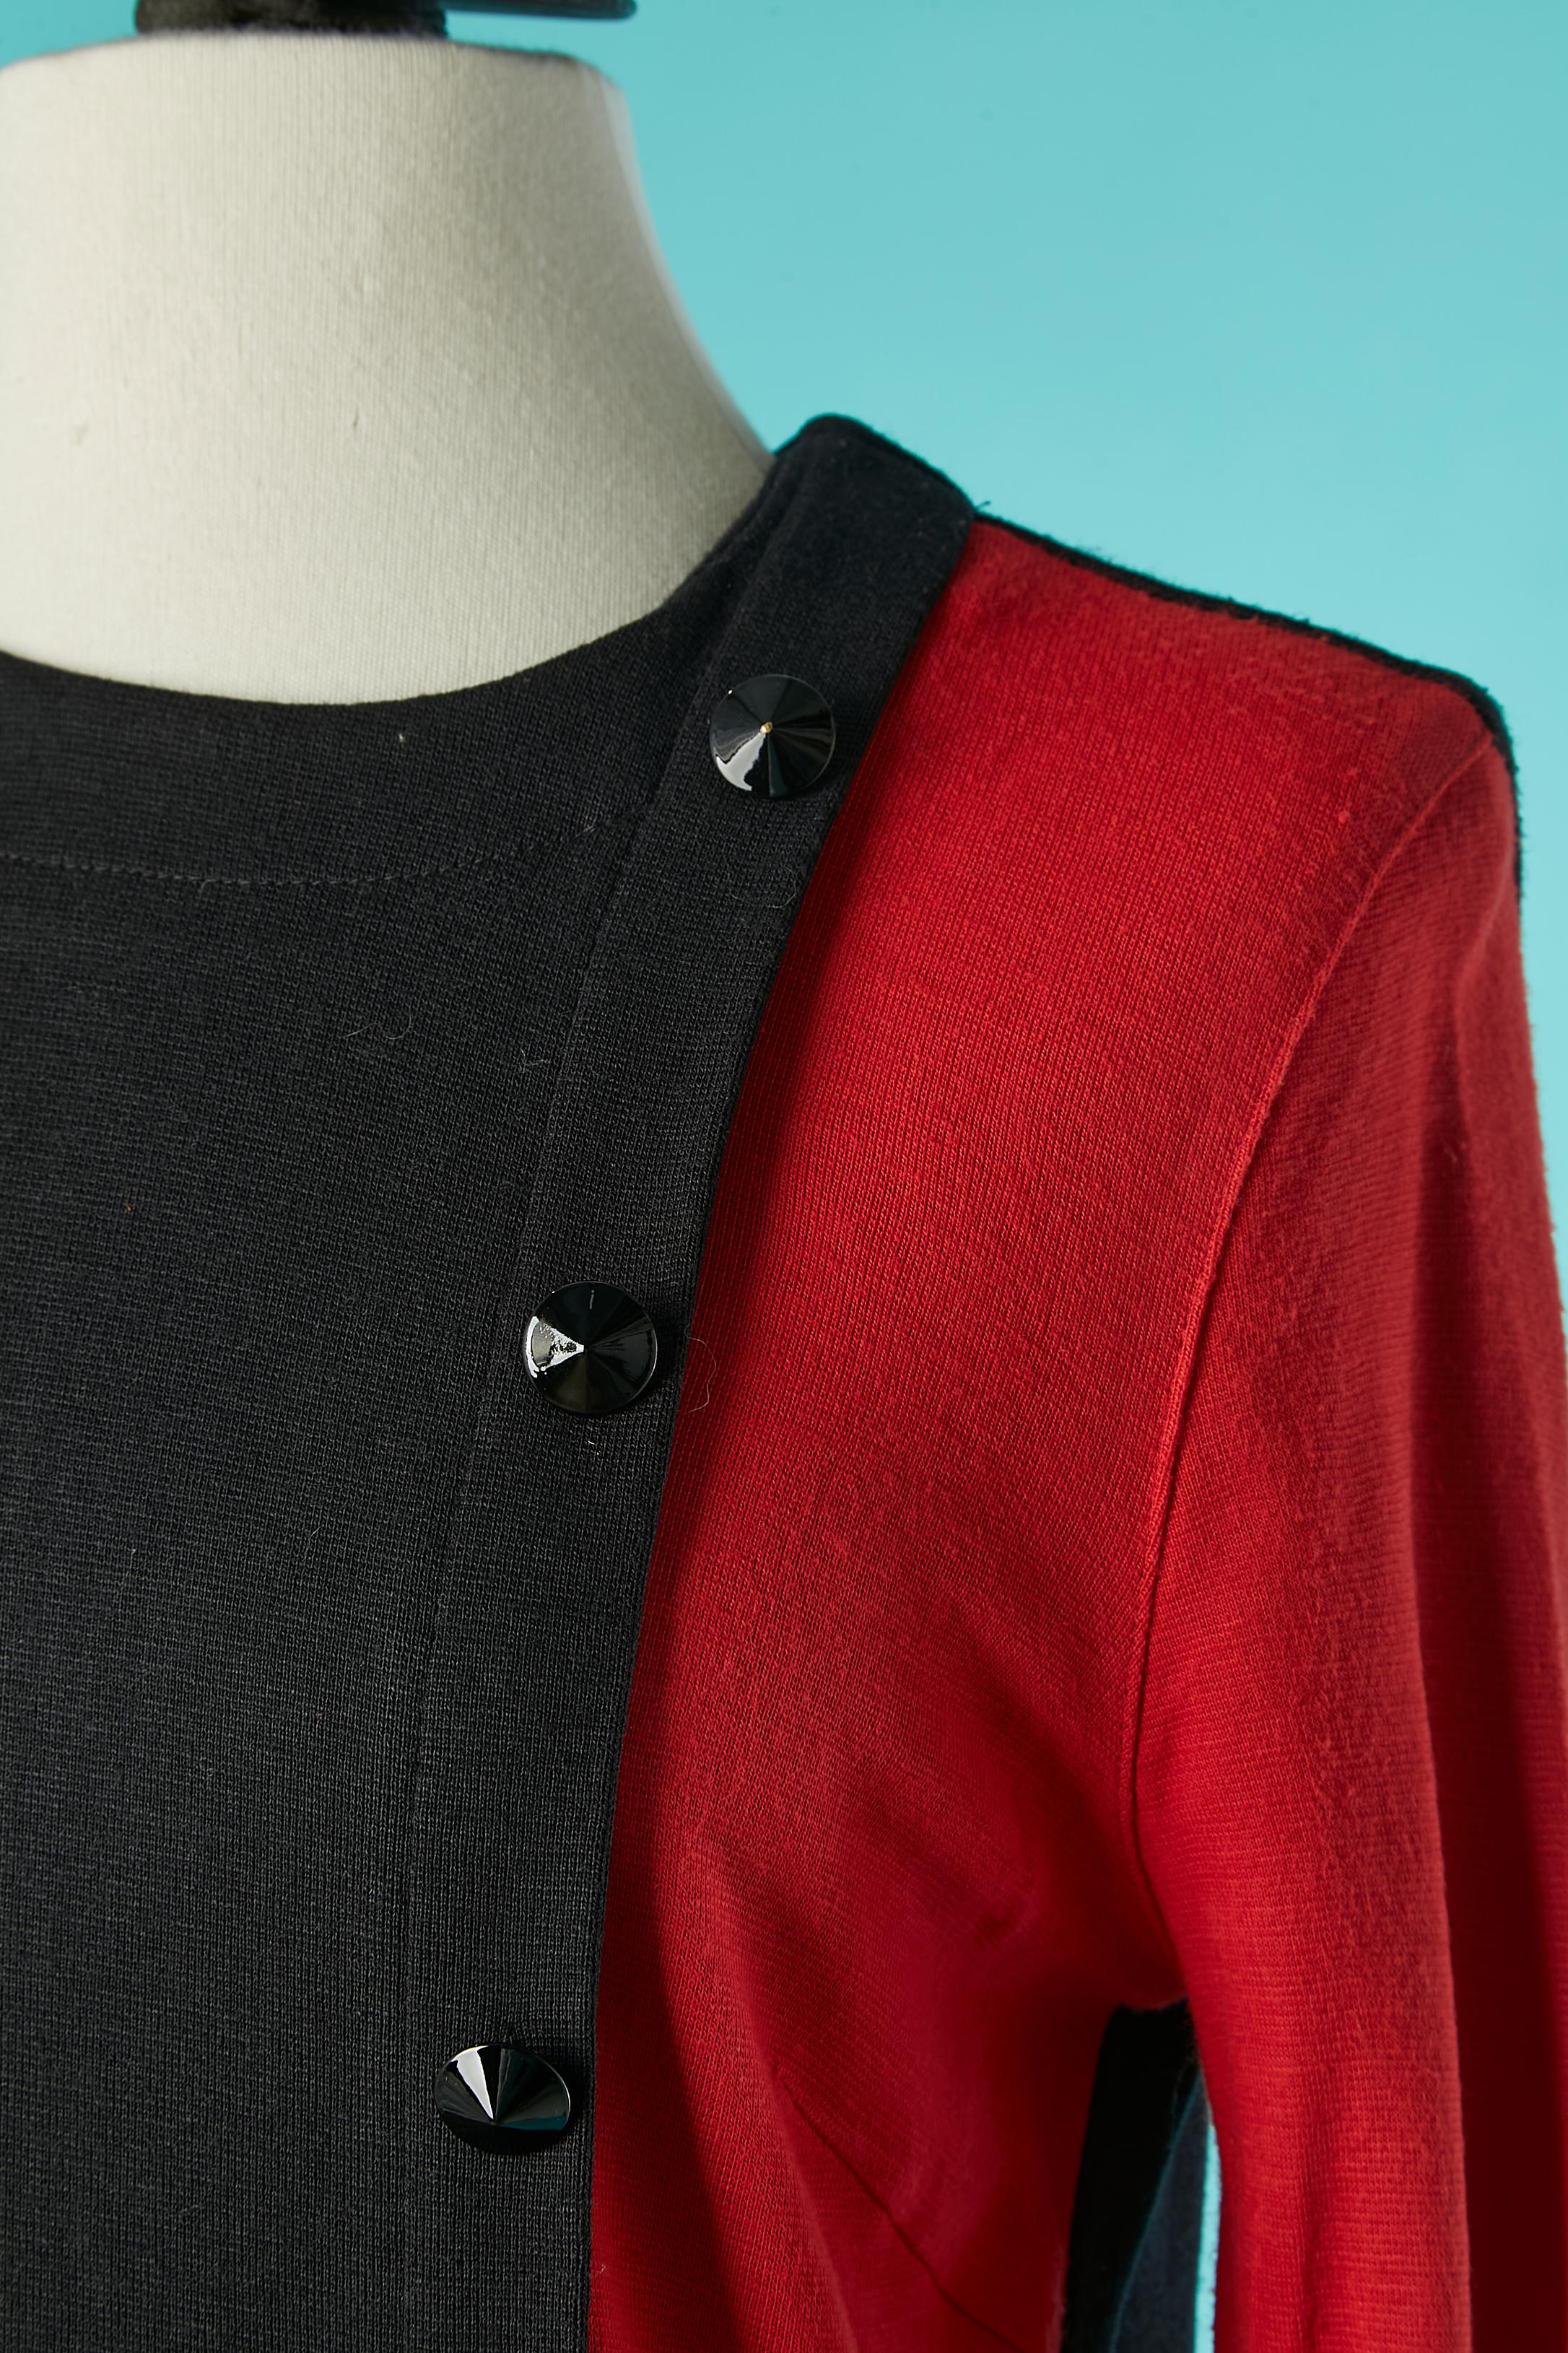 Schwarzes und rotes Jersey-Kleid mit Zierknöpfen.schwarze Zierknöpfe . Reißverschluss hinten Mitte. 
SIZE 38 (Fr) M 